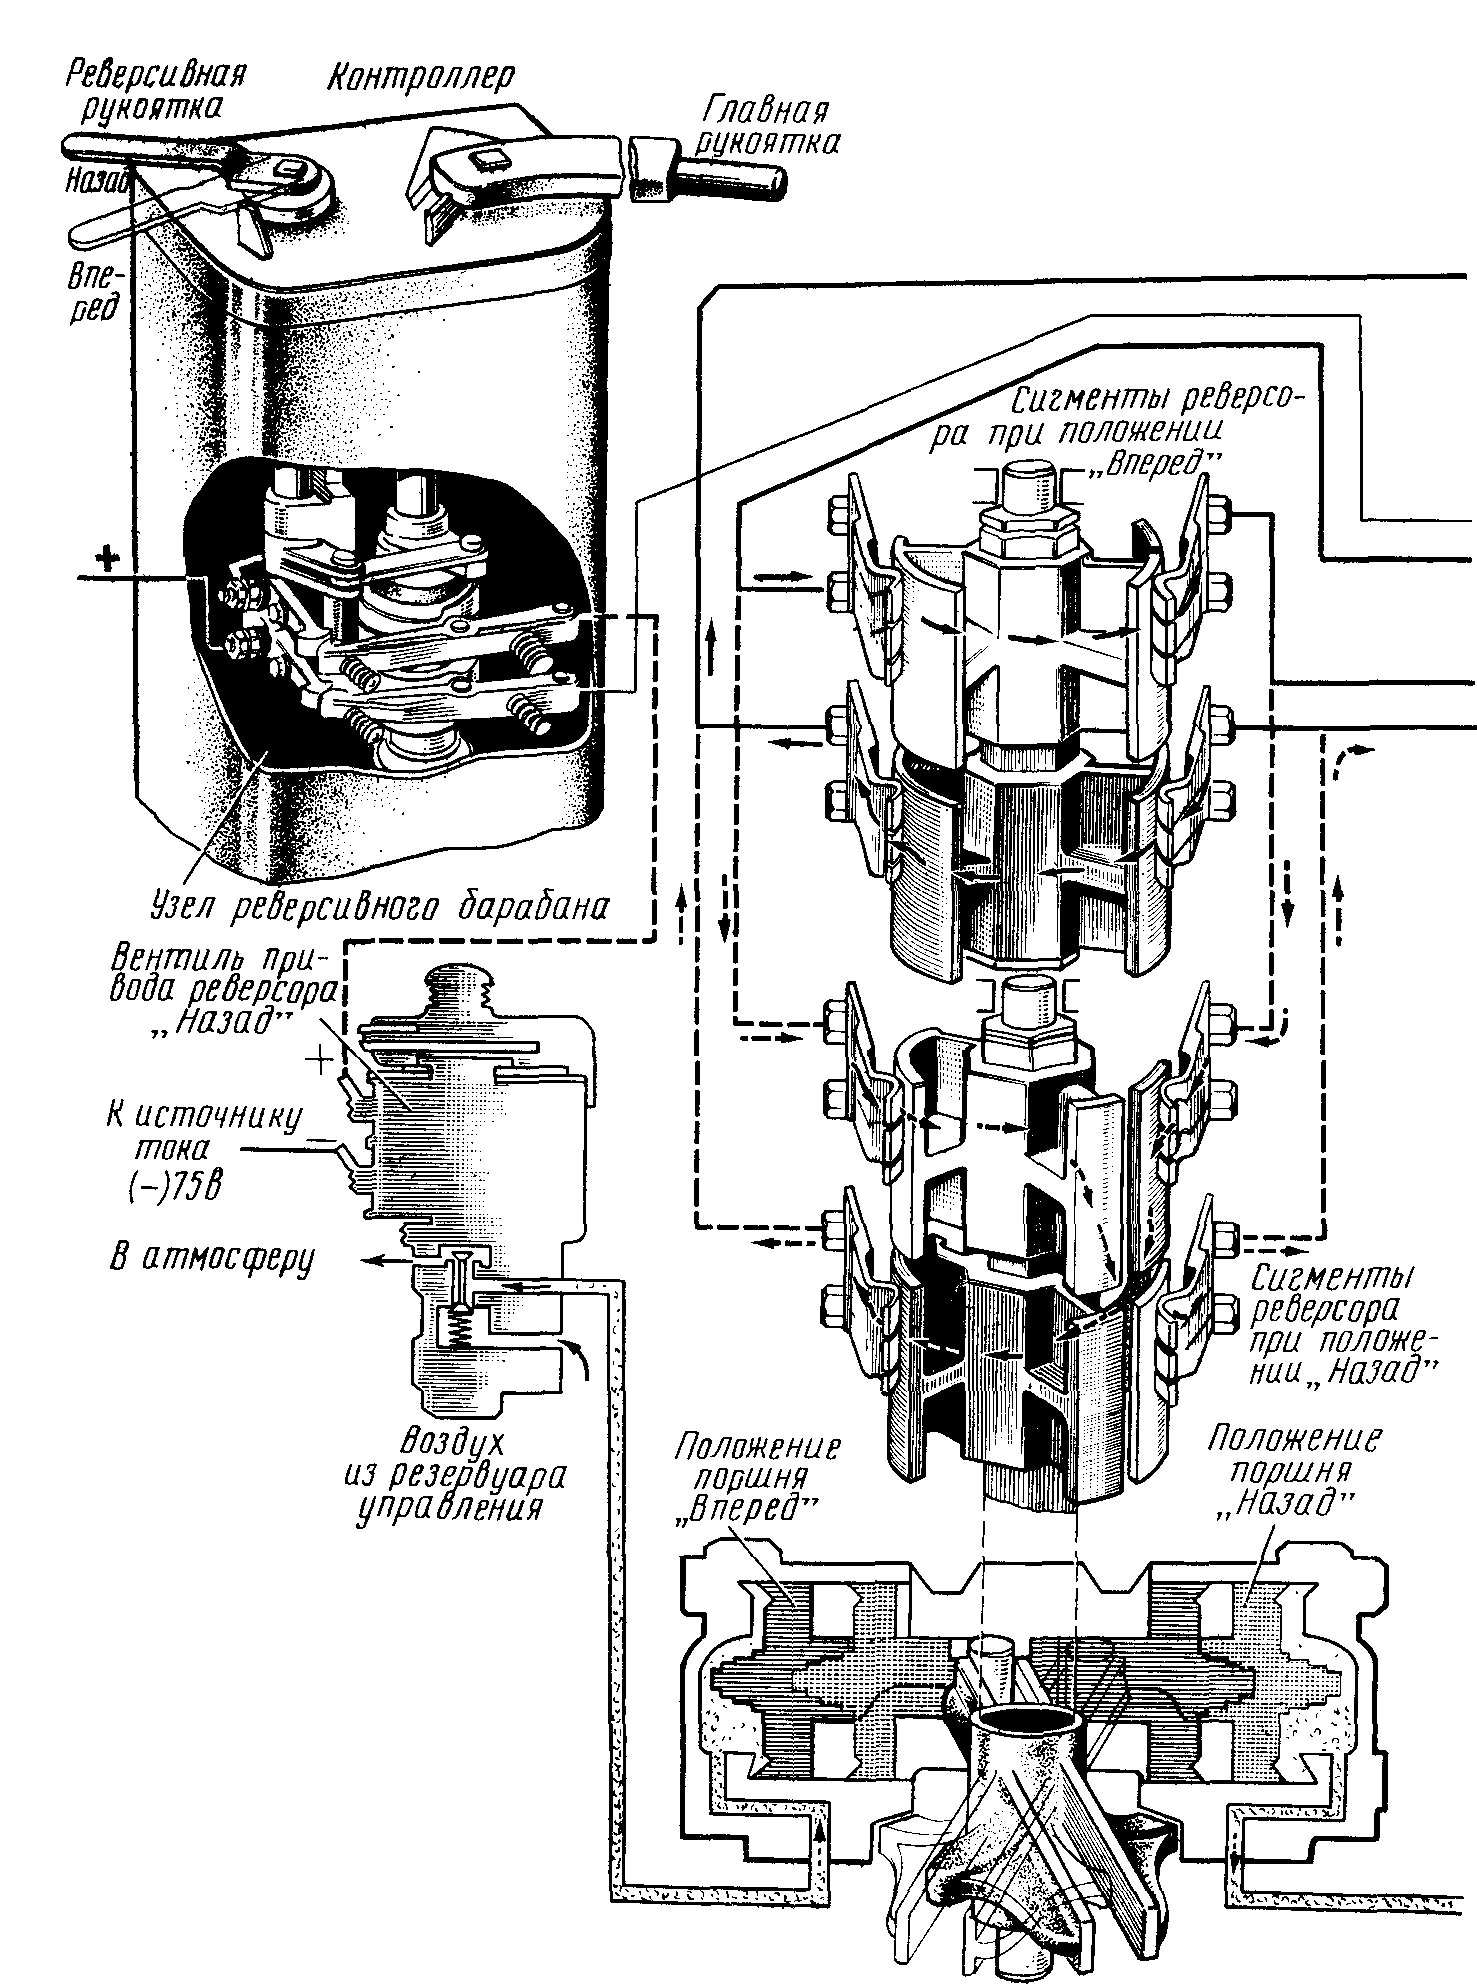 Схема реверсирования тяговых электродвигателей